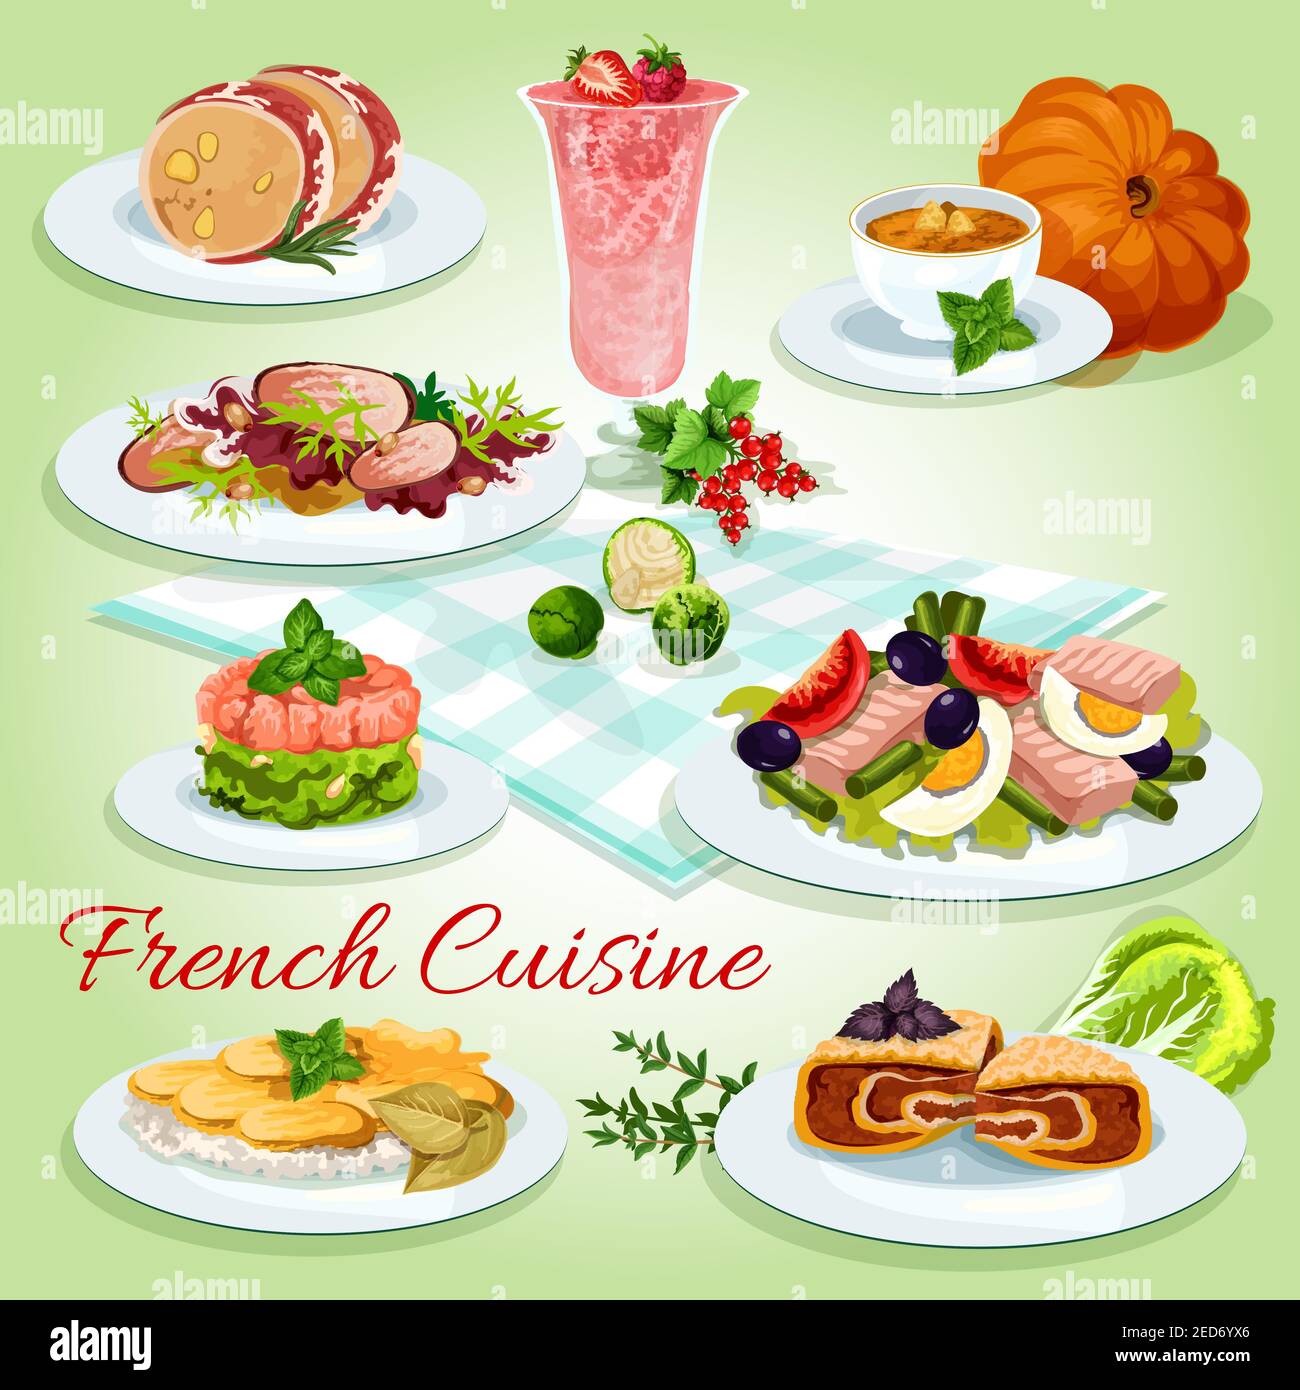 Französische Küche Cartoon-Ikone von Thunfisch-Ei-Salat mit Tomaten und Oliven, Kartoffelkäse Auflauf, Lachs Tartare, Entensalat, Kürbissuppe, Leber Mousse i Stock Vektor